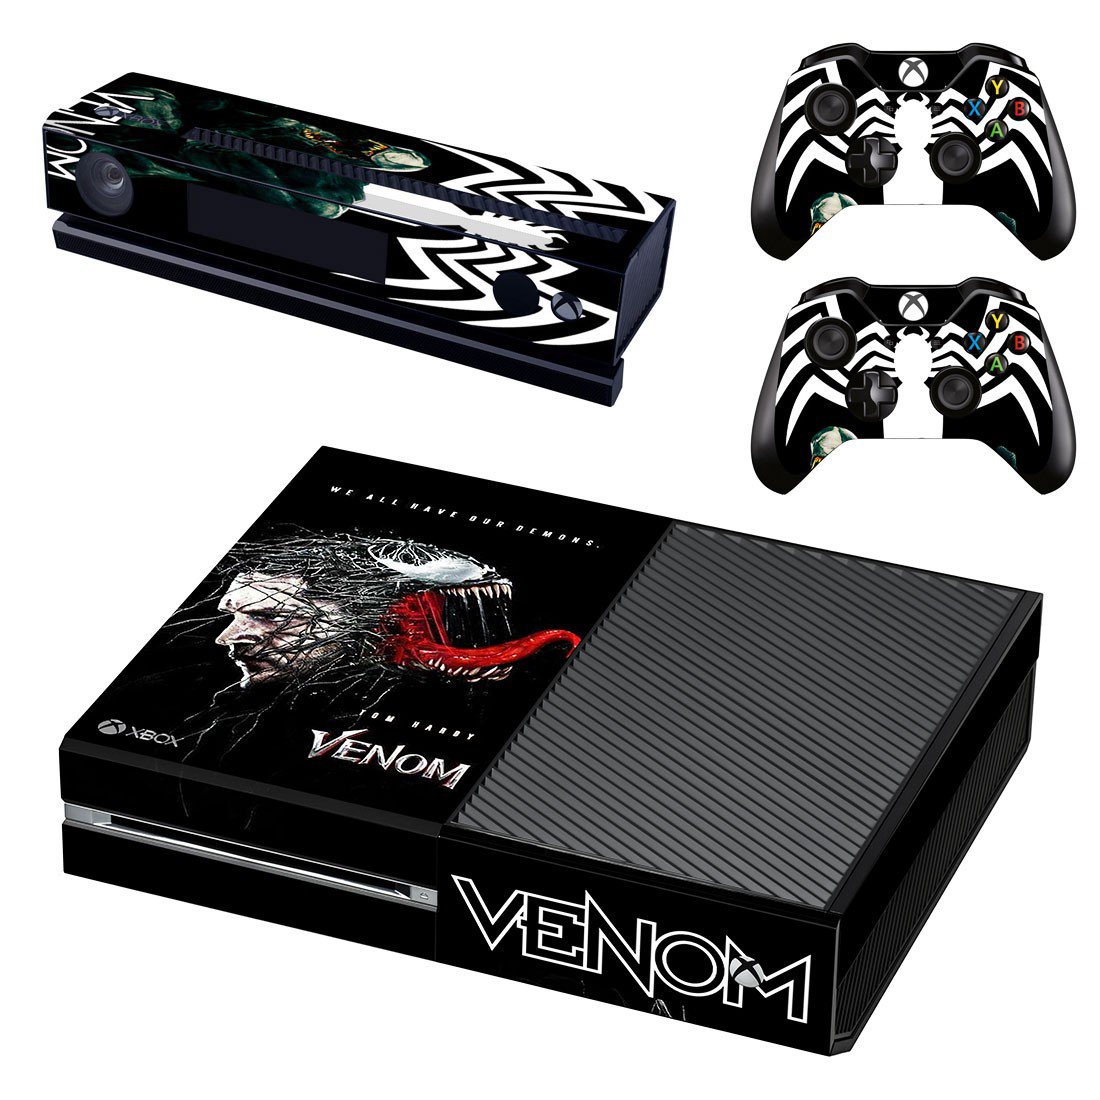 Xbox One Skin Cover - Venom